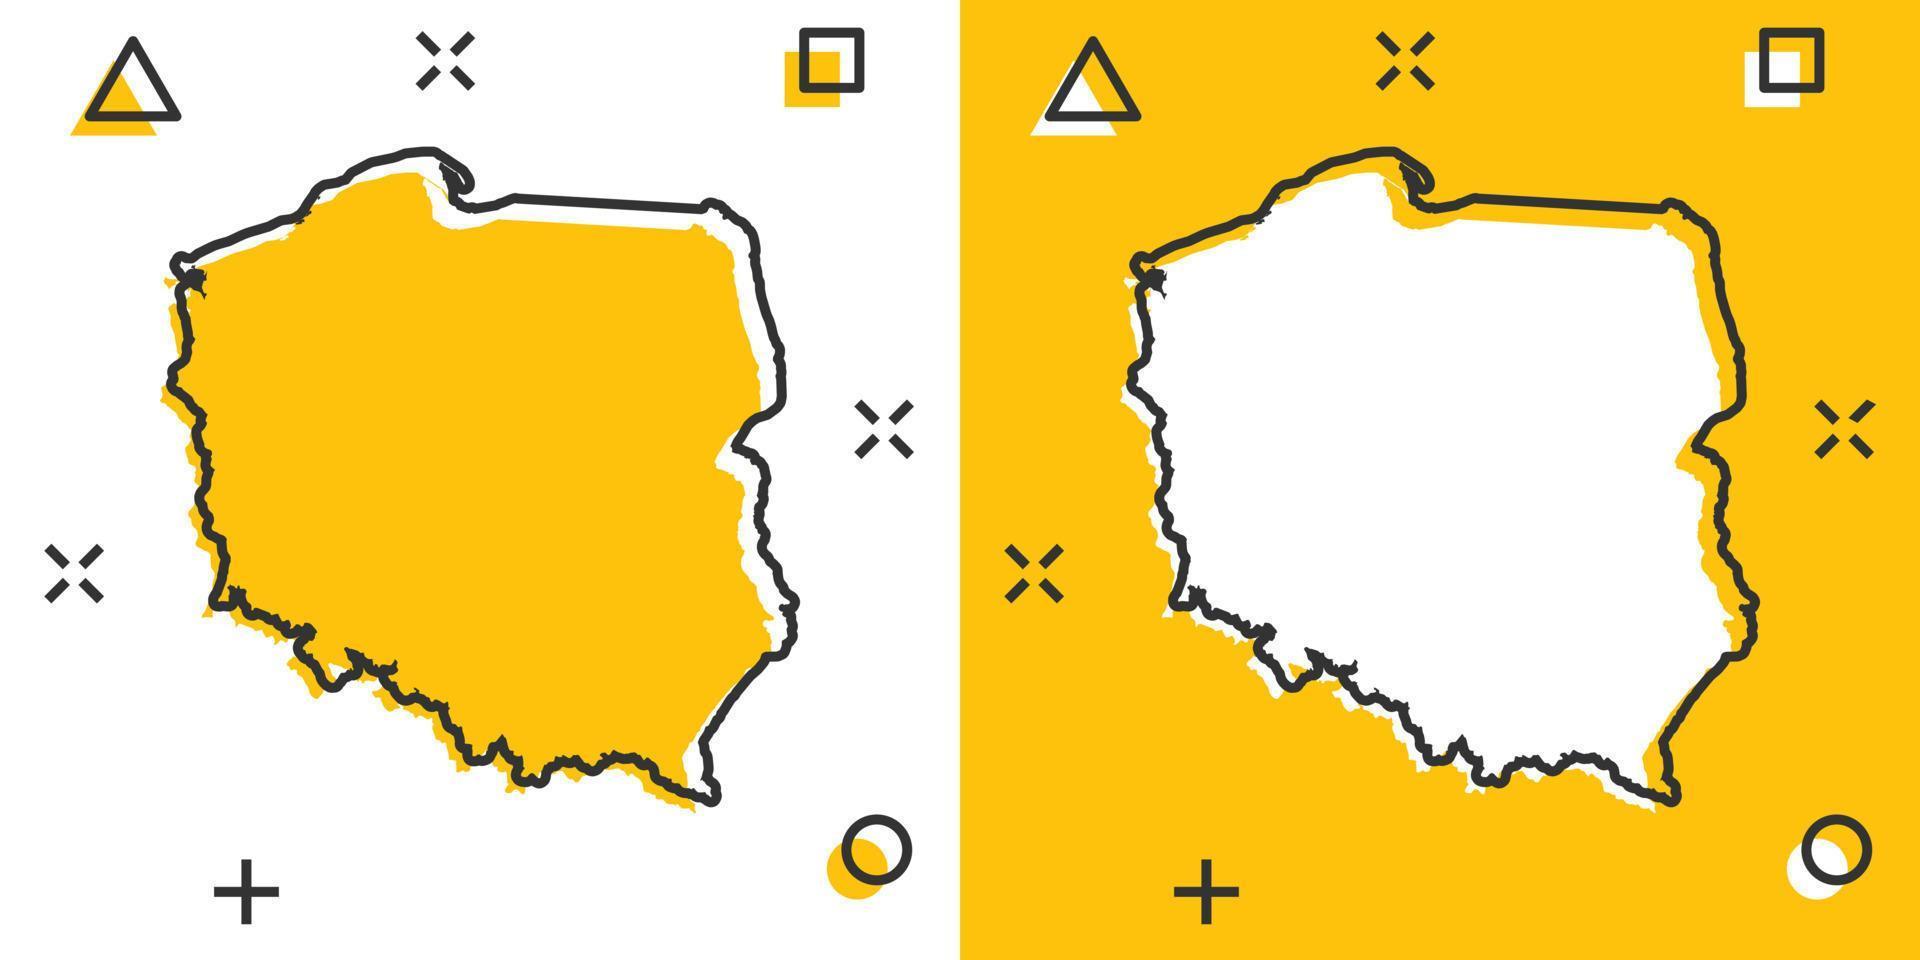 Vektor Cartoon Polen Kartensymbol im Comic-Stil. Polen Zeichen Abbildung Piktogramm. Kartografie-Karten-Business-Splash-Effekt-Konzept.